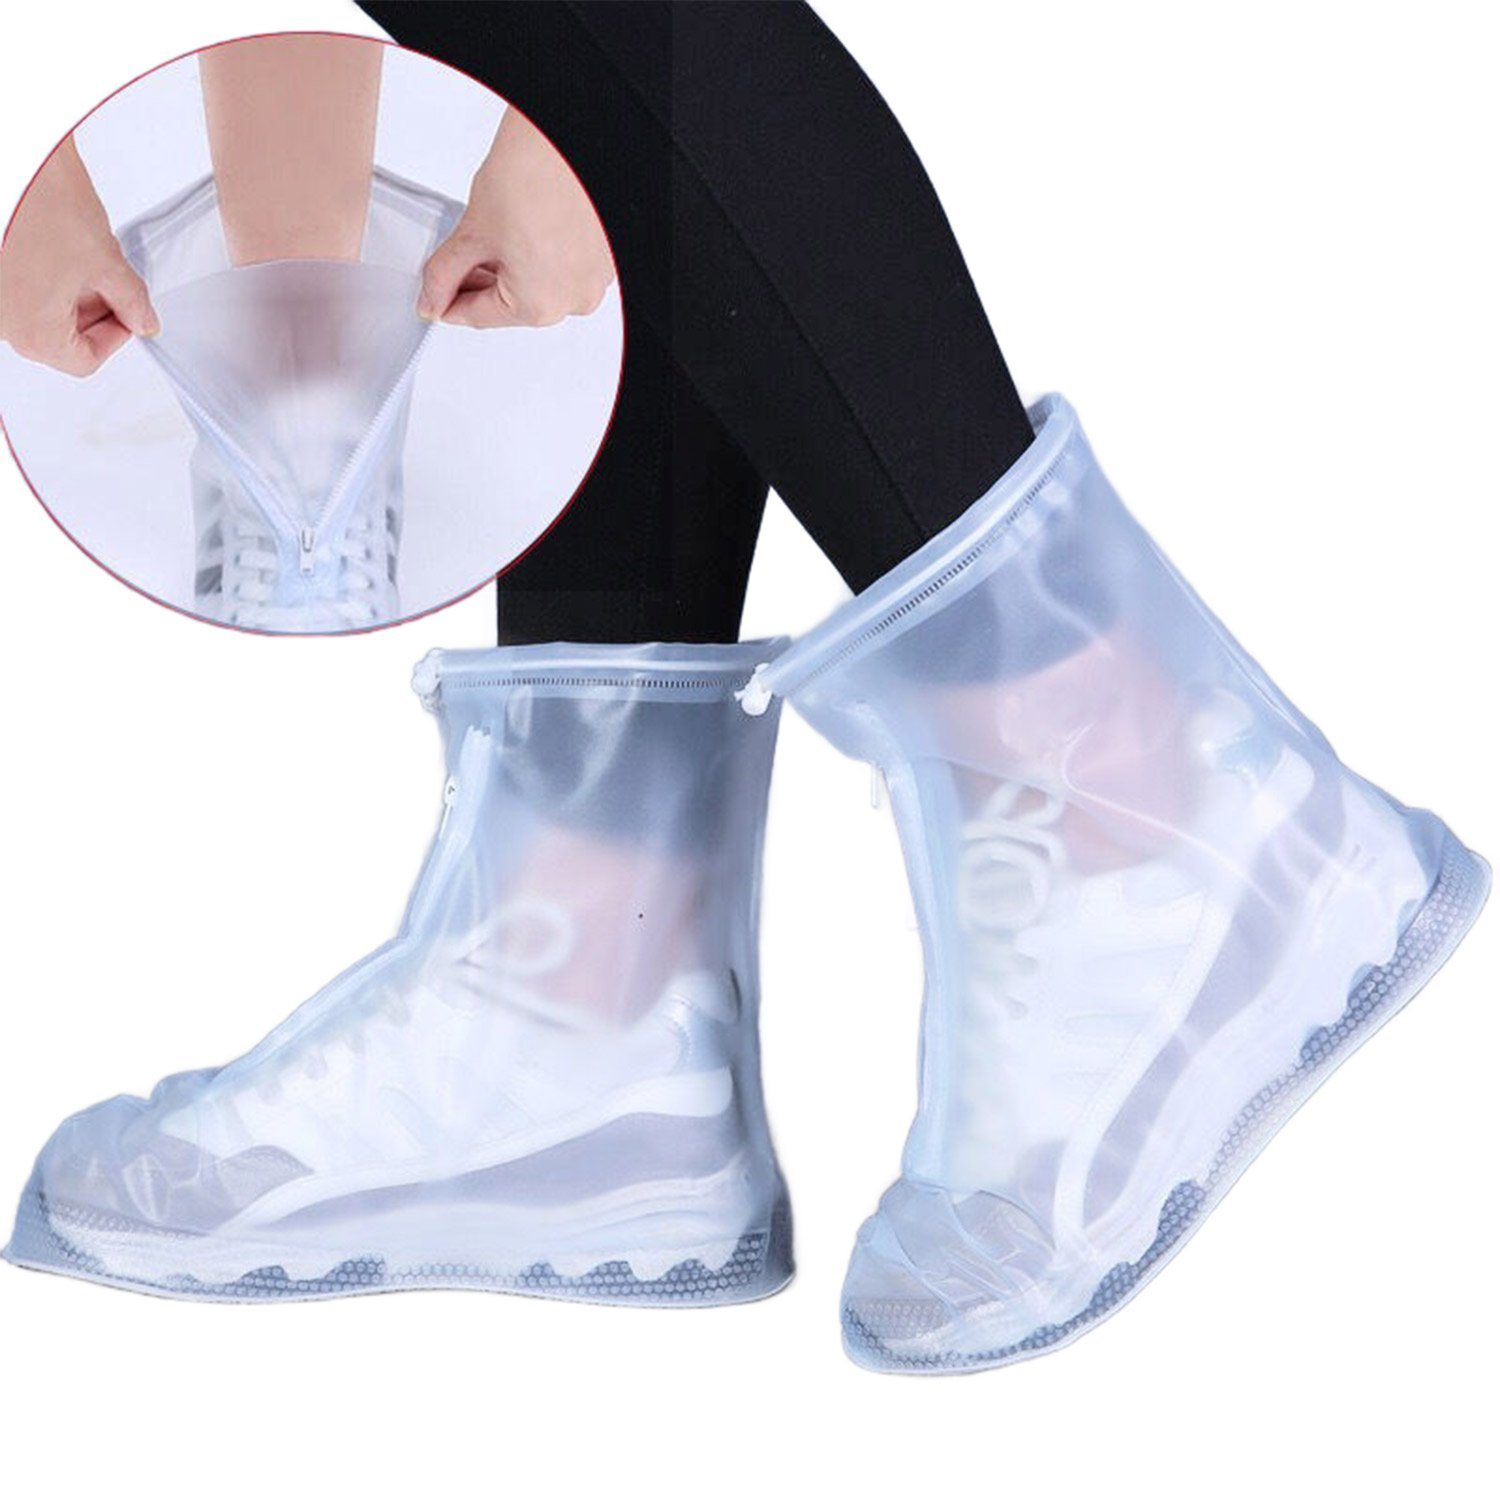 Daisred Schuhüberzieher Wasserdicht Regenschutz Überzieher Schuhe Weiß